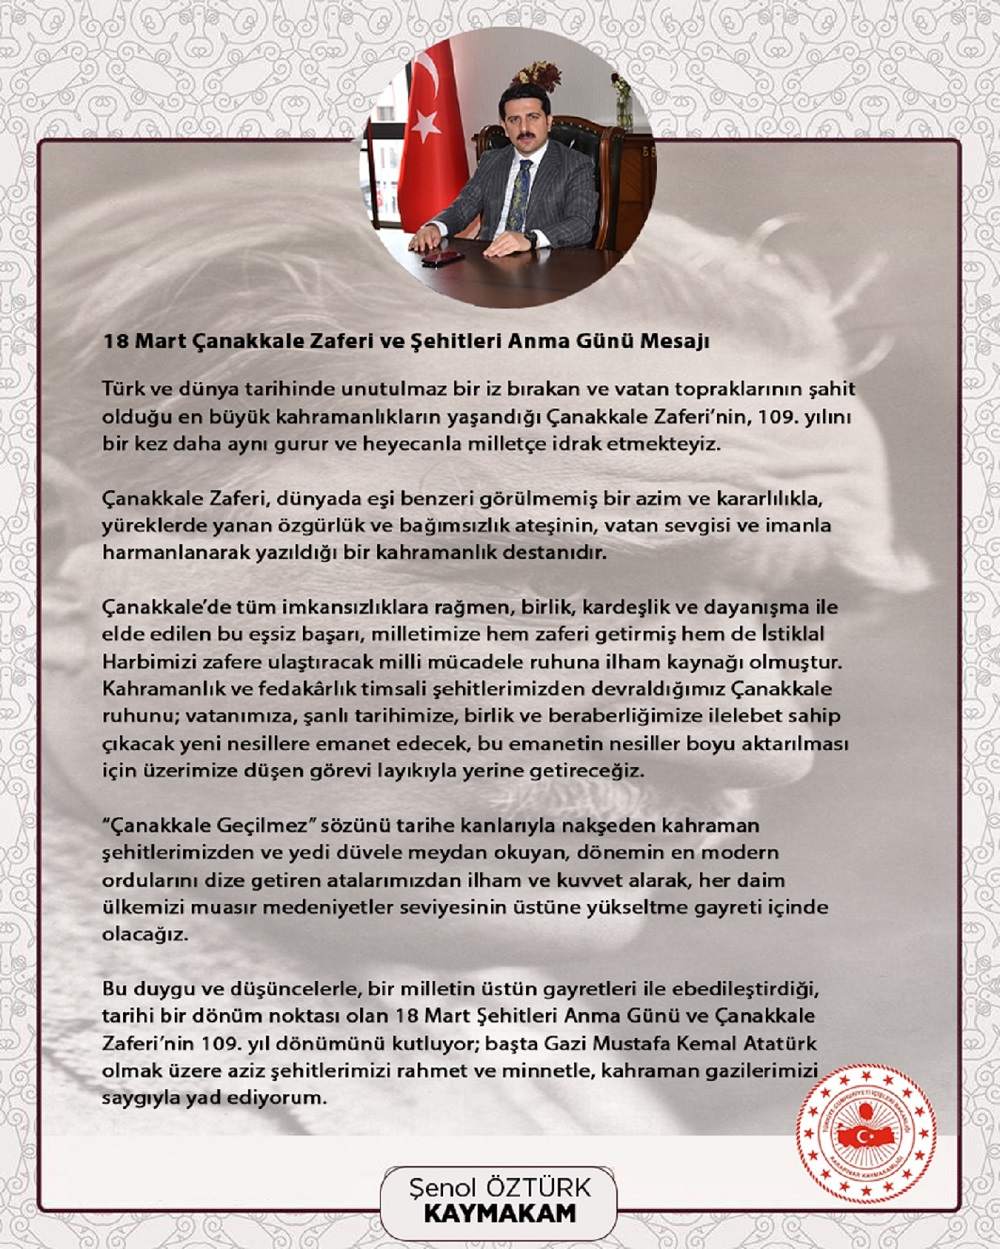 Kaymakamımız Şenol ÖZTÜRK' ün “18 Mart Çanakkale Zaferi ve Şehitleri Anma Günü” Mesajı